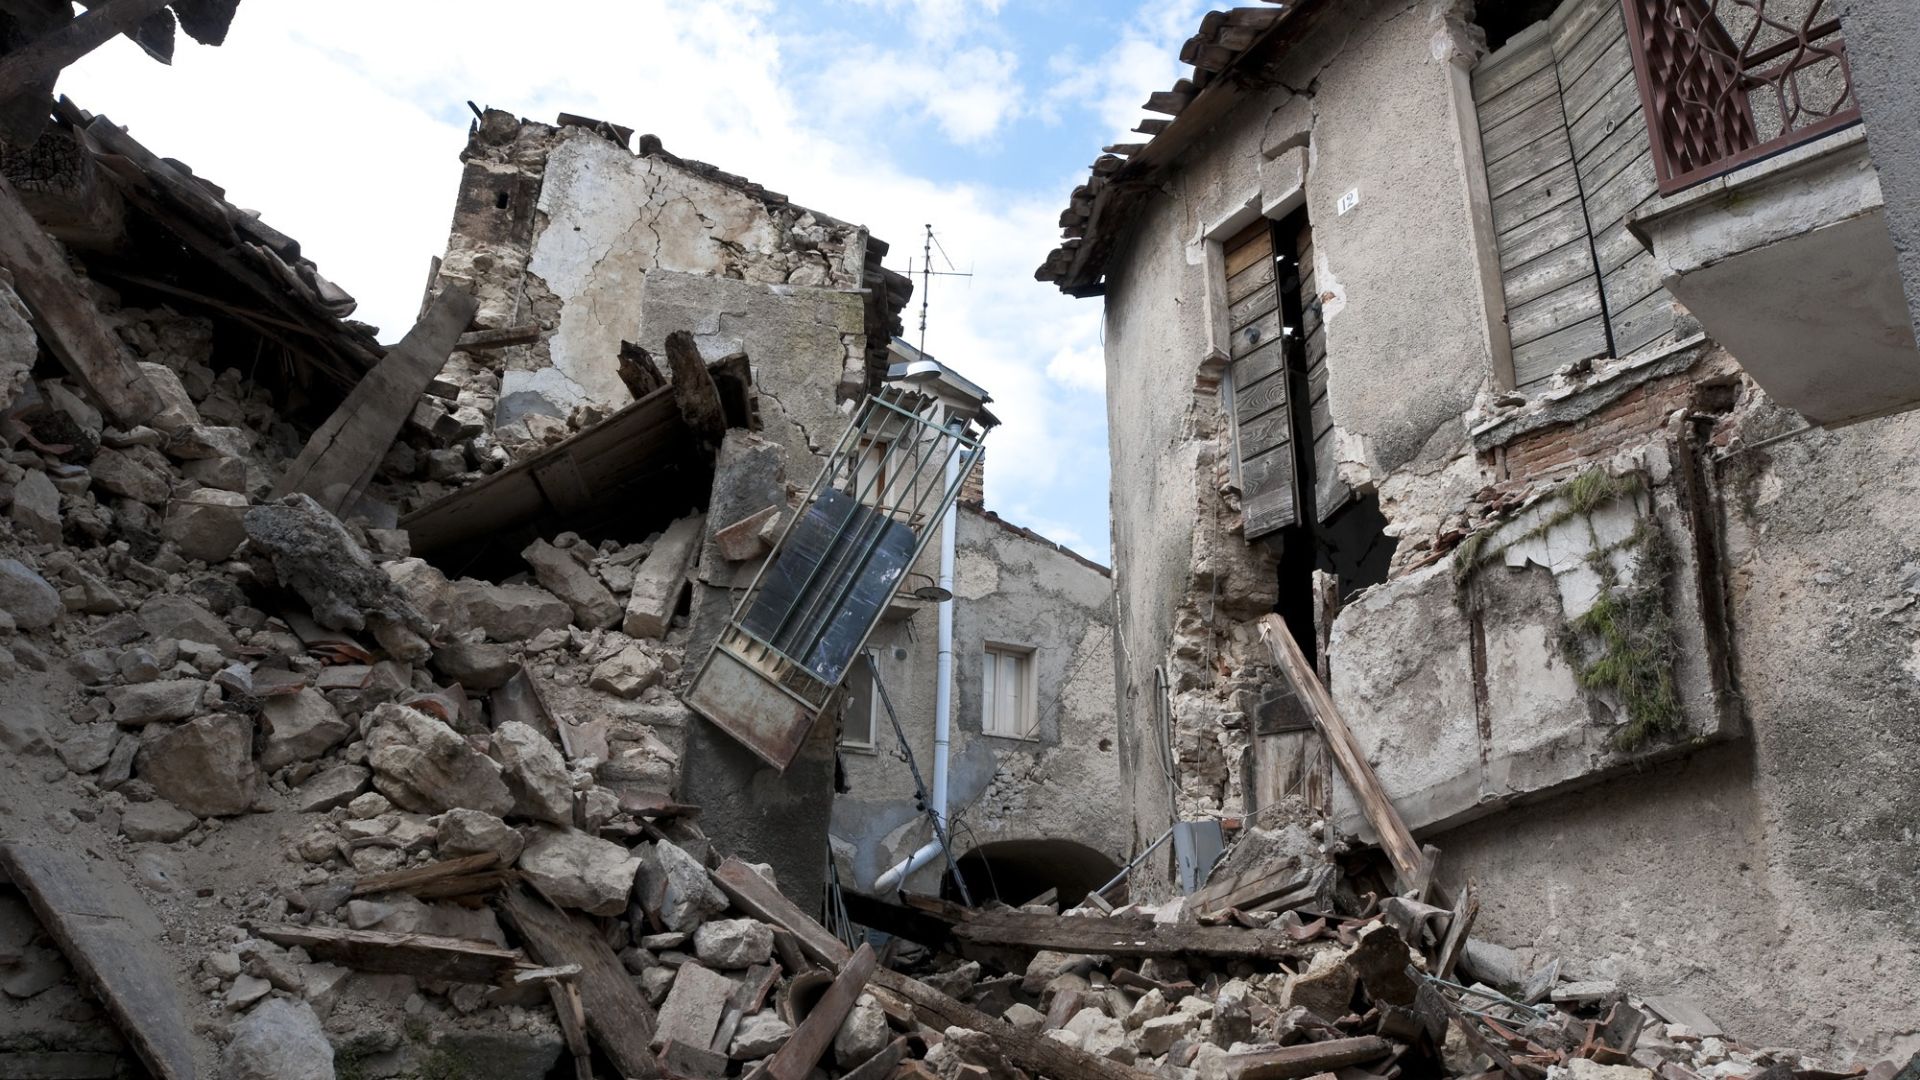 AVVISO AI CLIENTI FIDER - Misure previste dall'OCDPC N.991 per fronteggiare l'emergenza provocata dagli eventi sismici - Sospensione rate mutui